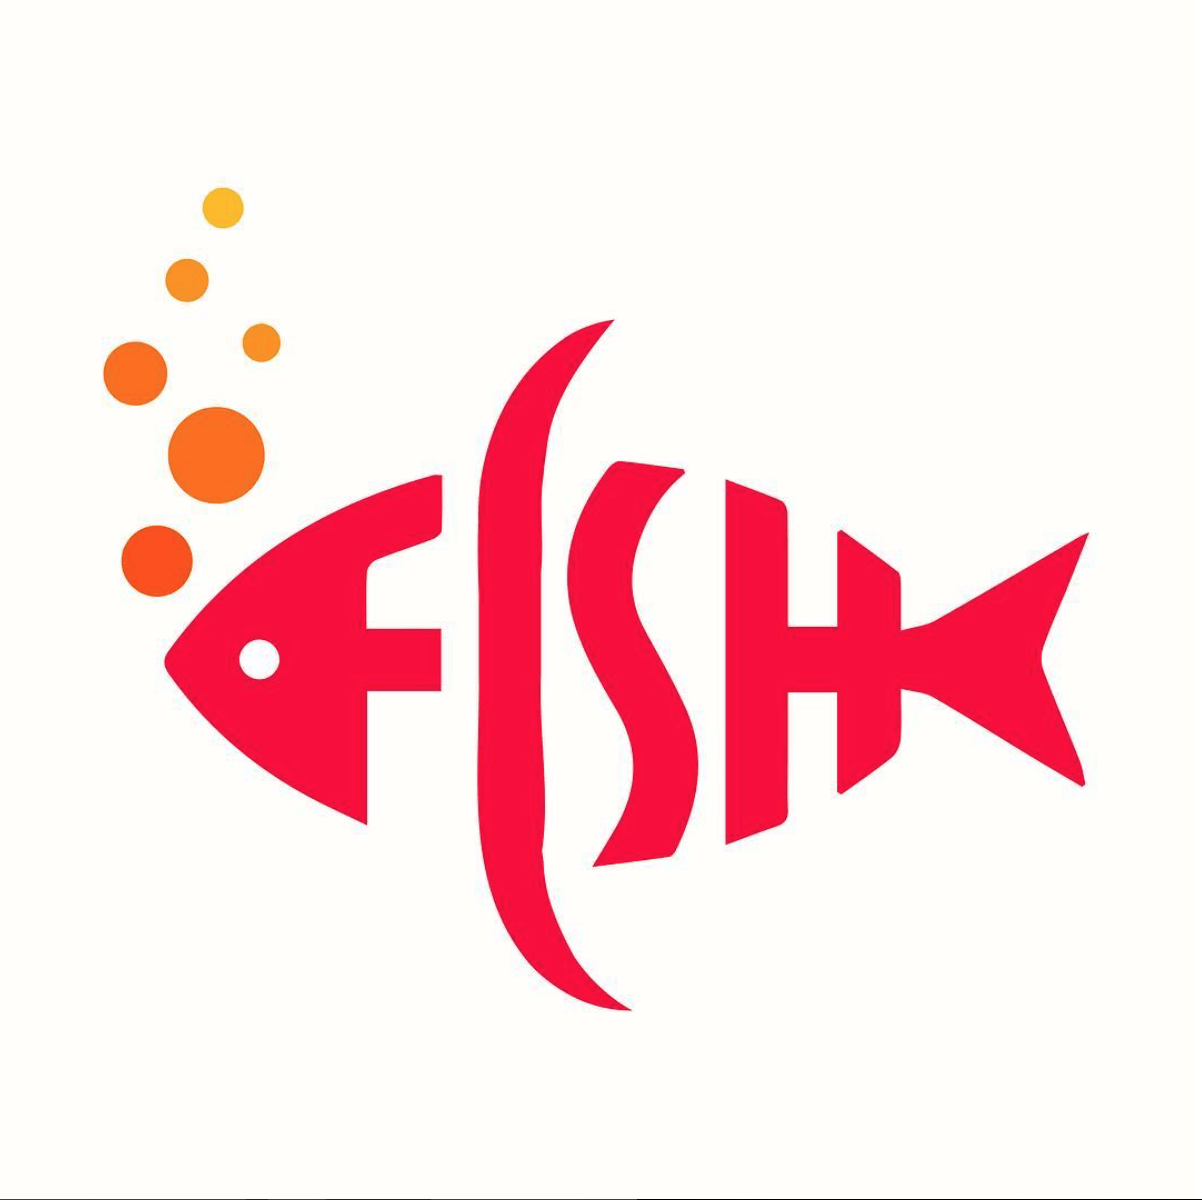 Red Fish Logo - FISH . . #fish #redfish #logo #logos #fishlogo #fishlogos #graphic ...